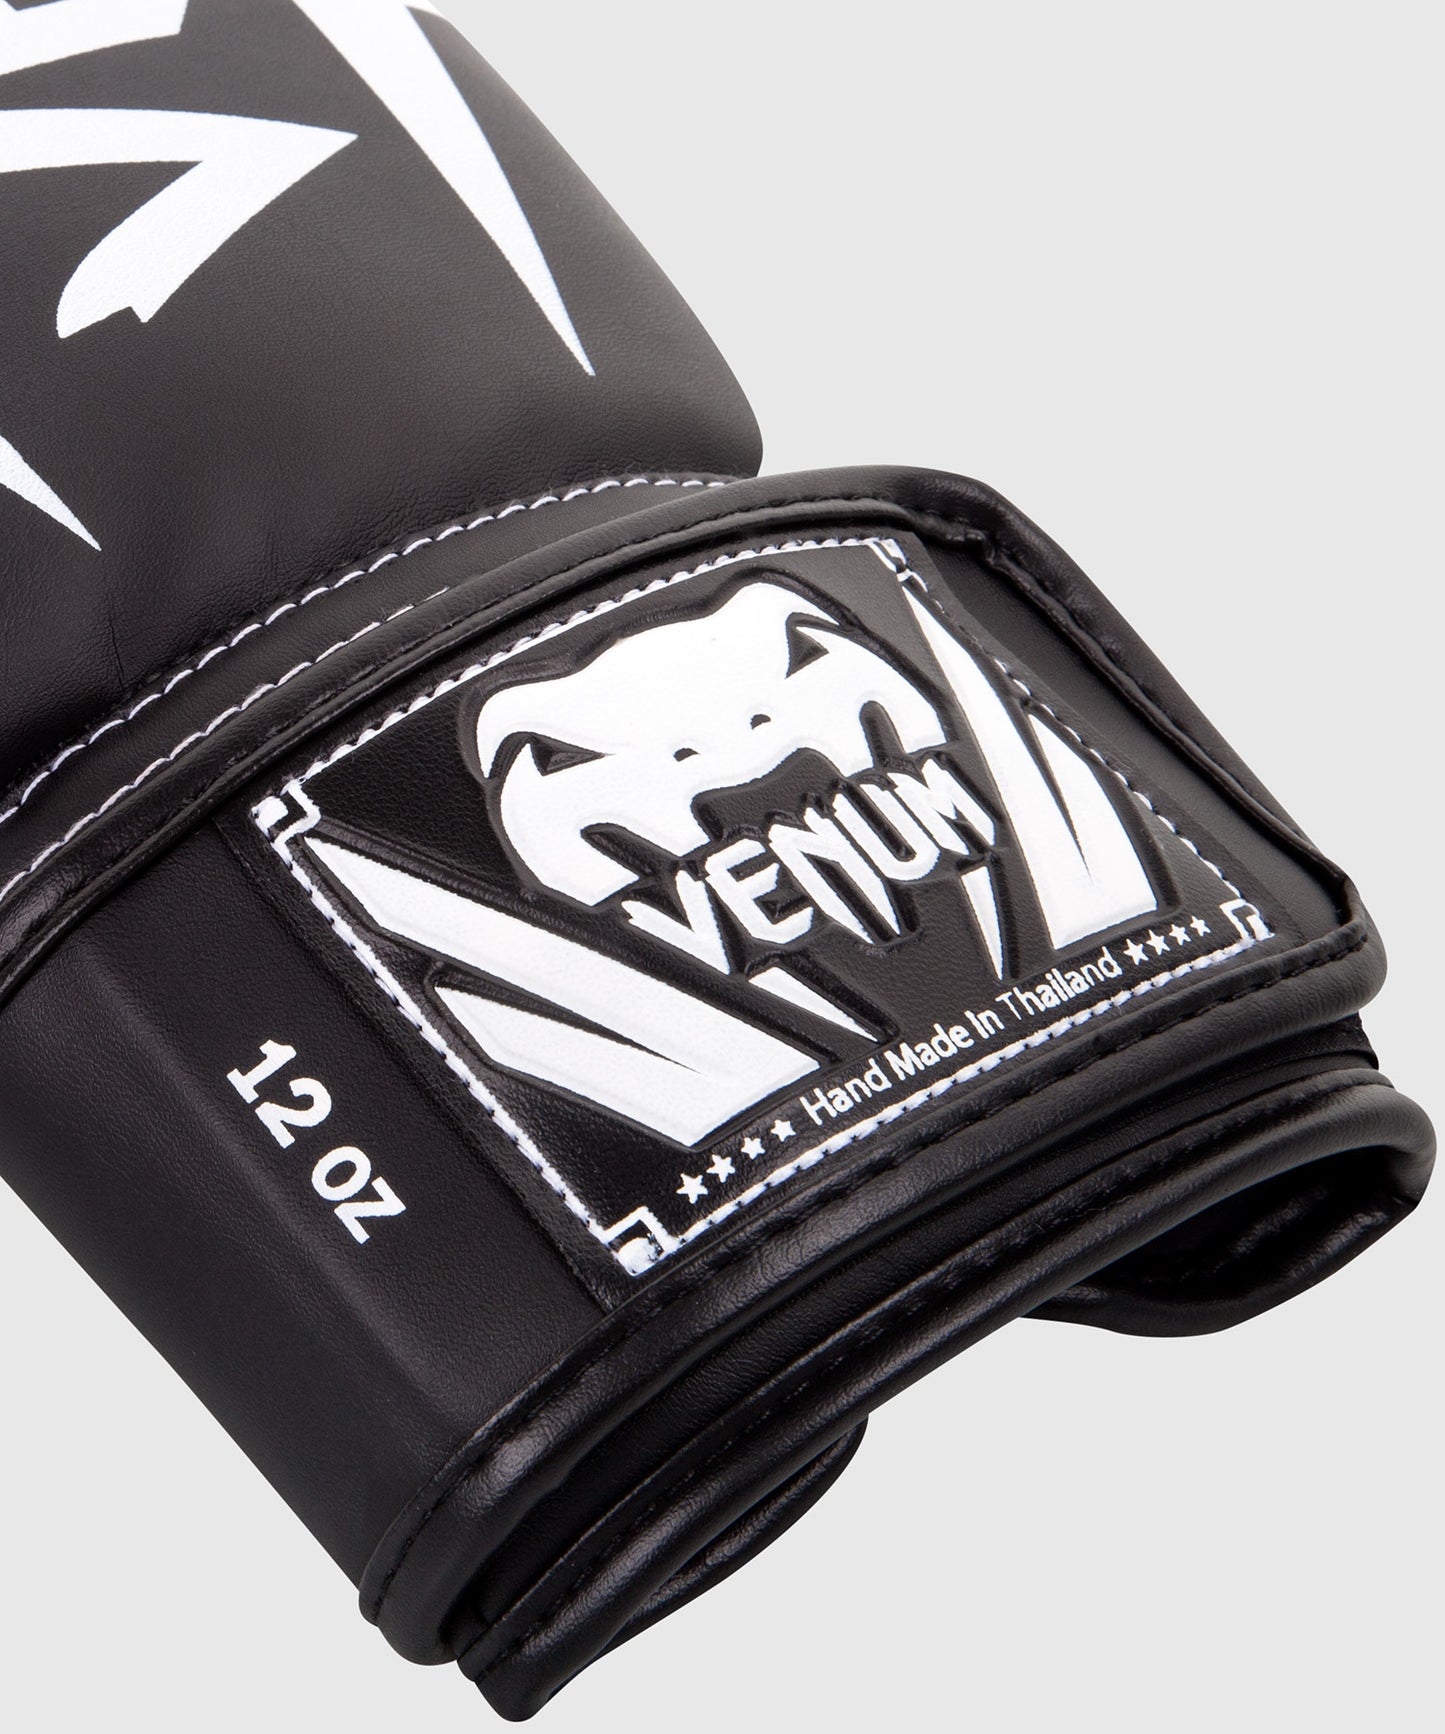 Venum Elite Boxing Gloves - Black/White